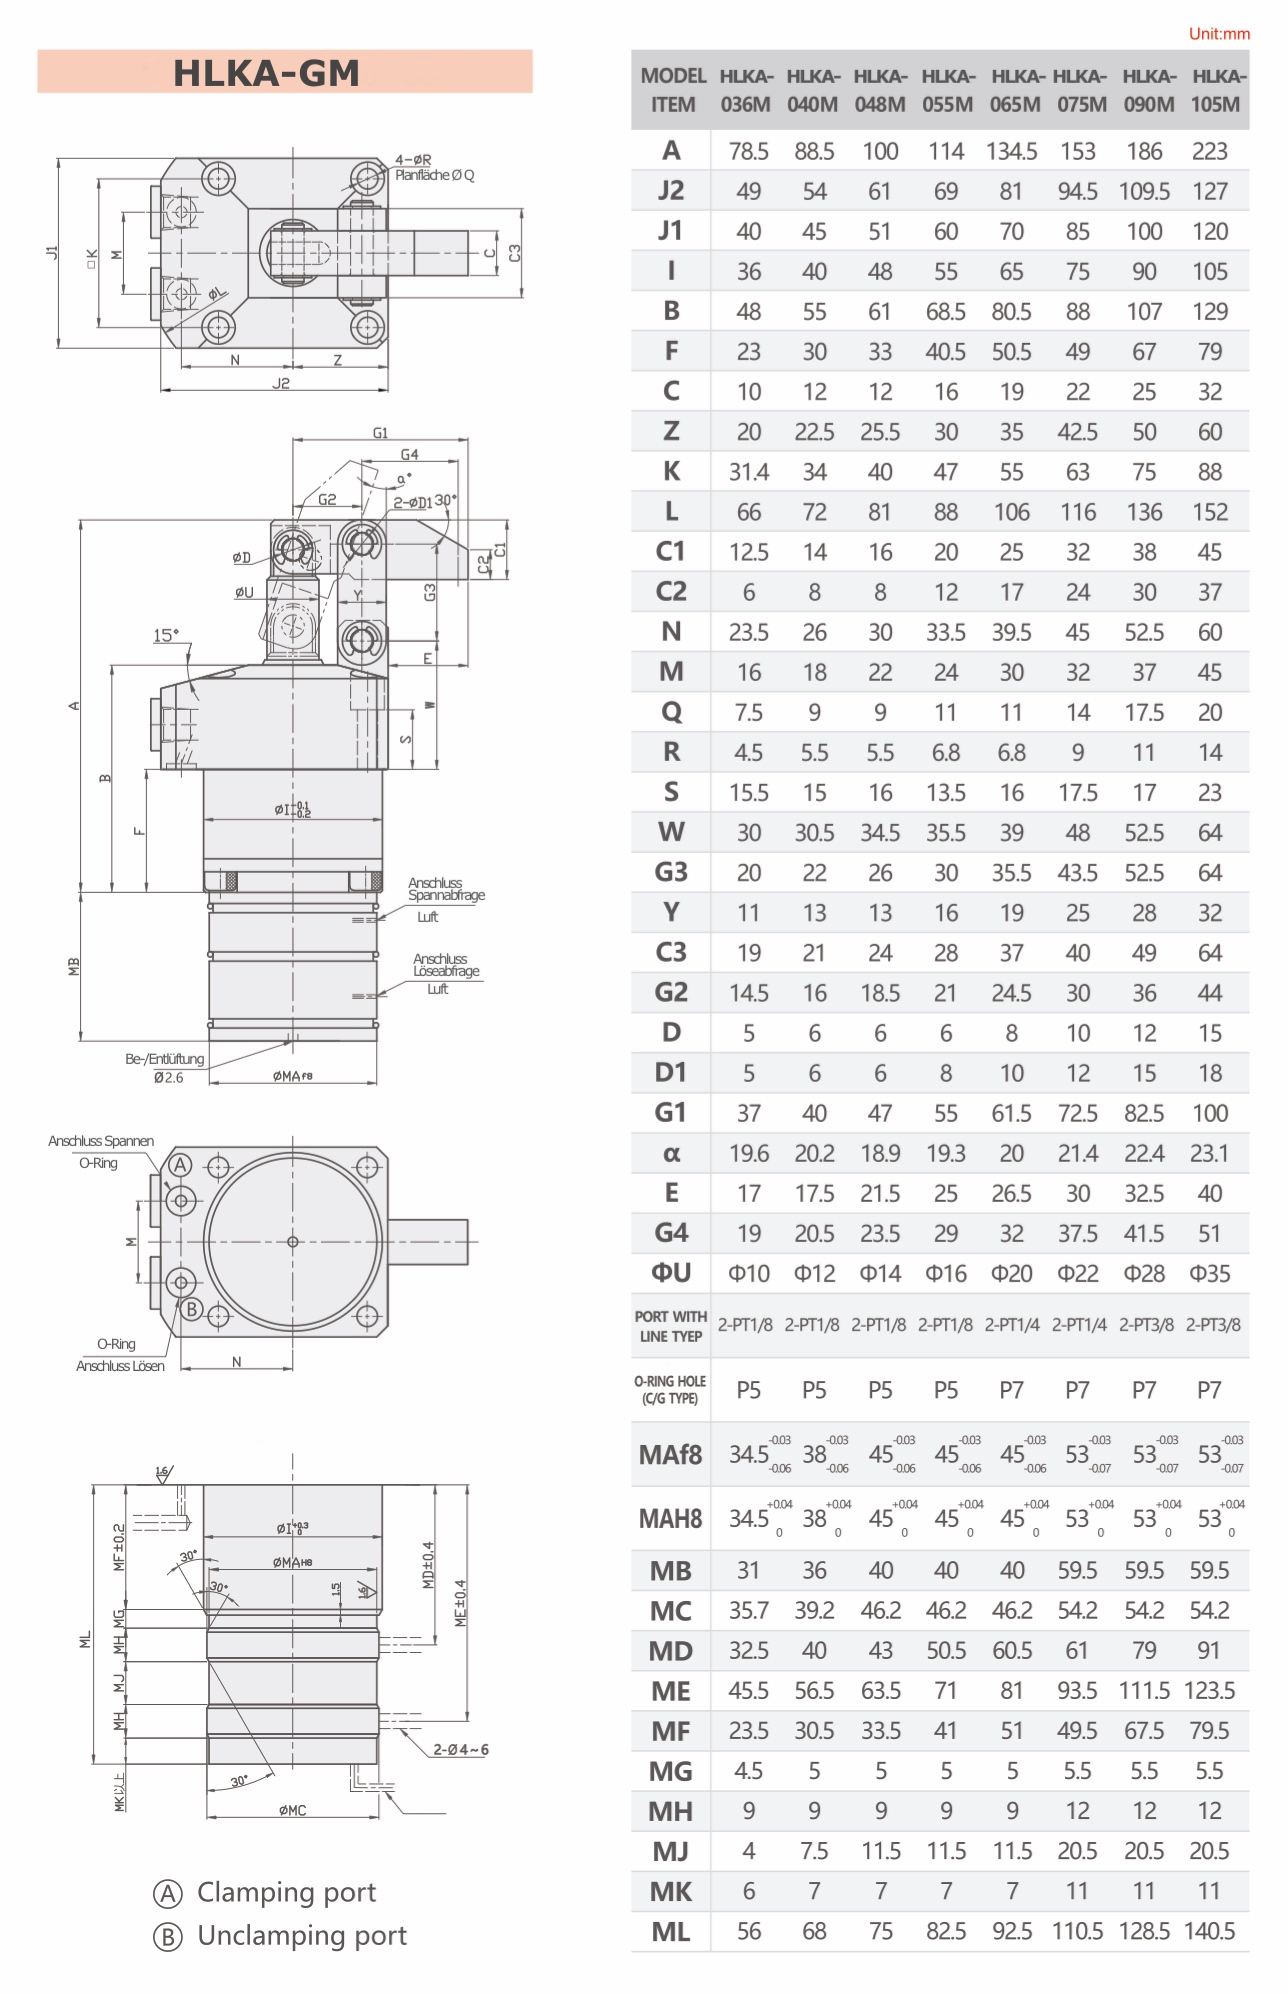 HLKA-GM Technische Zeichnung Hydraulischer Hebelspanner pneumatischer Positionsabfrage bei Tieflochbohrung